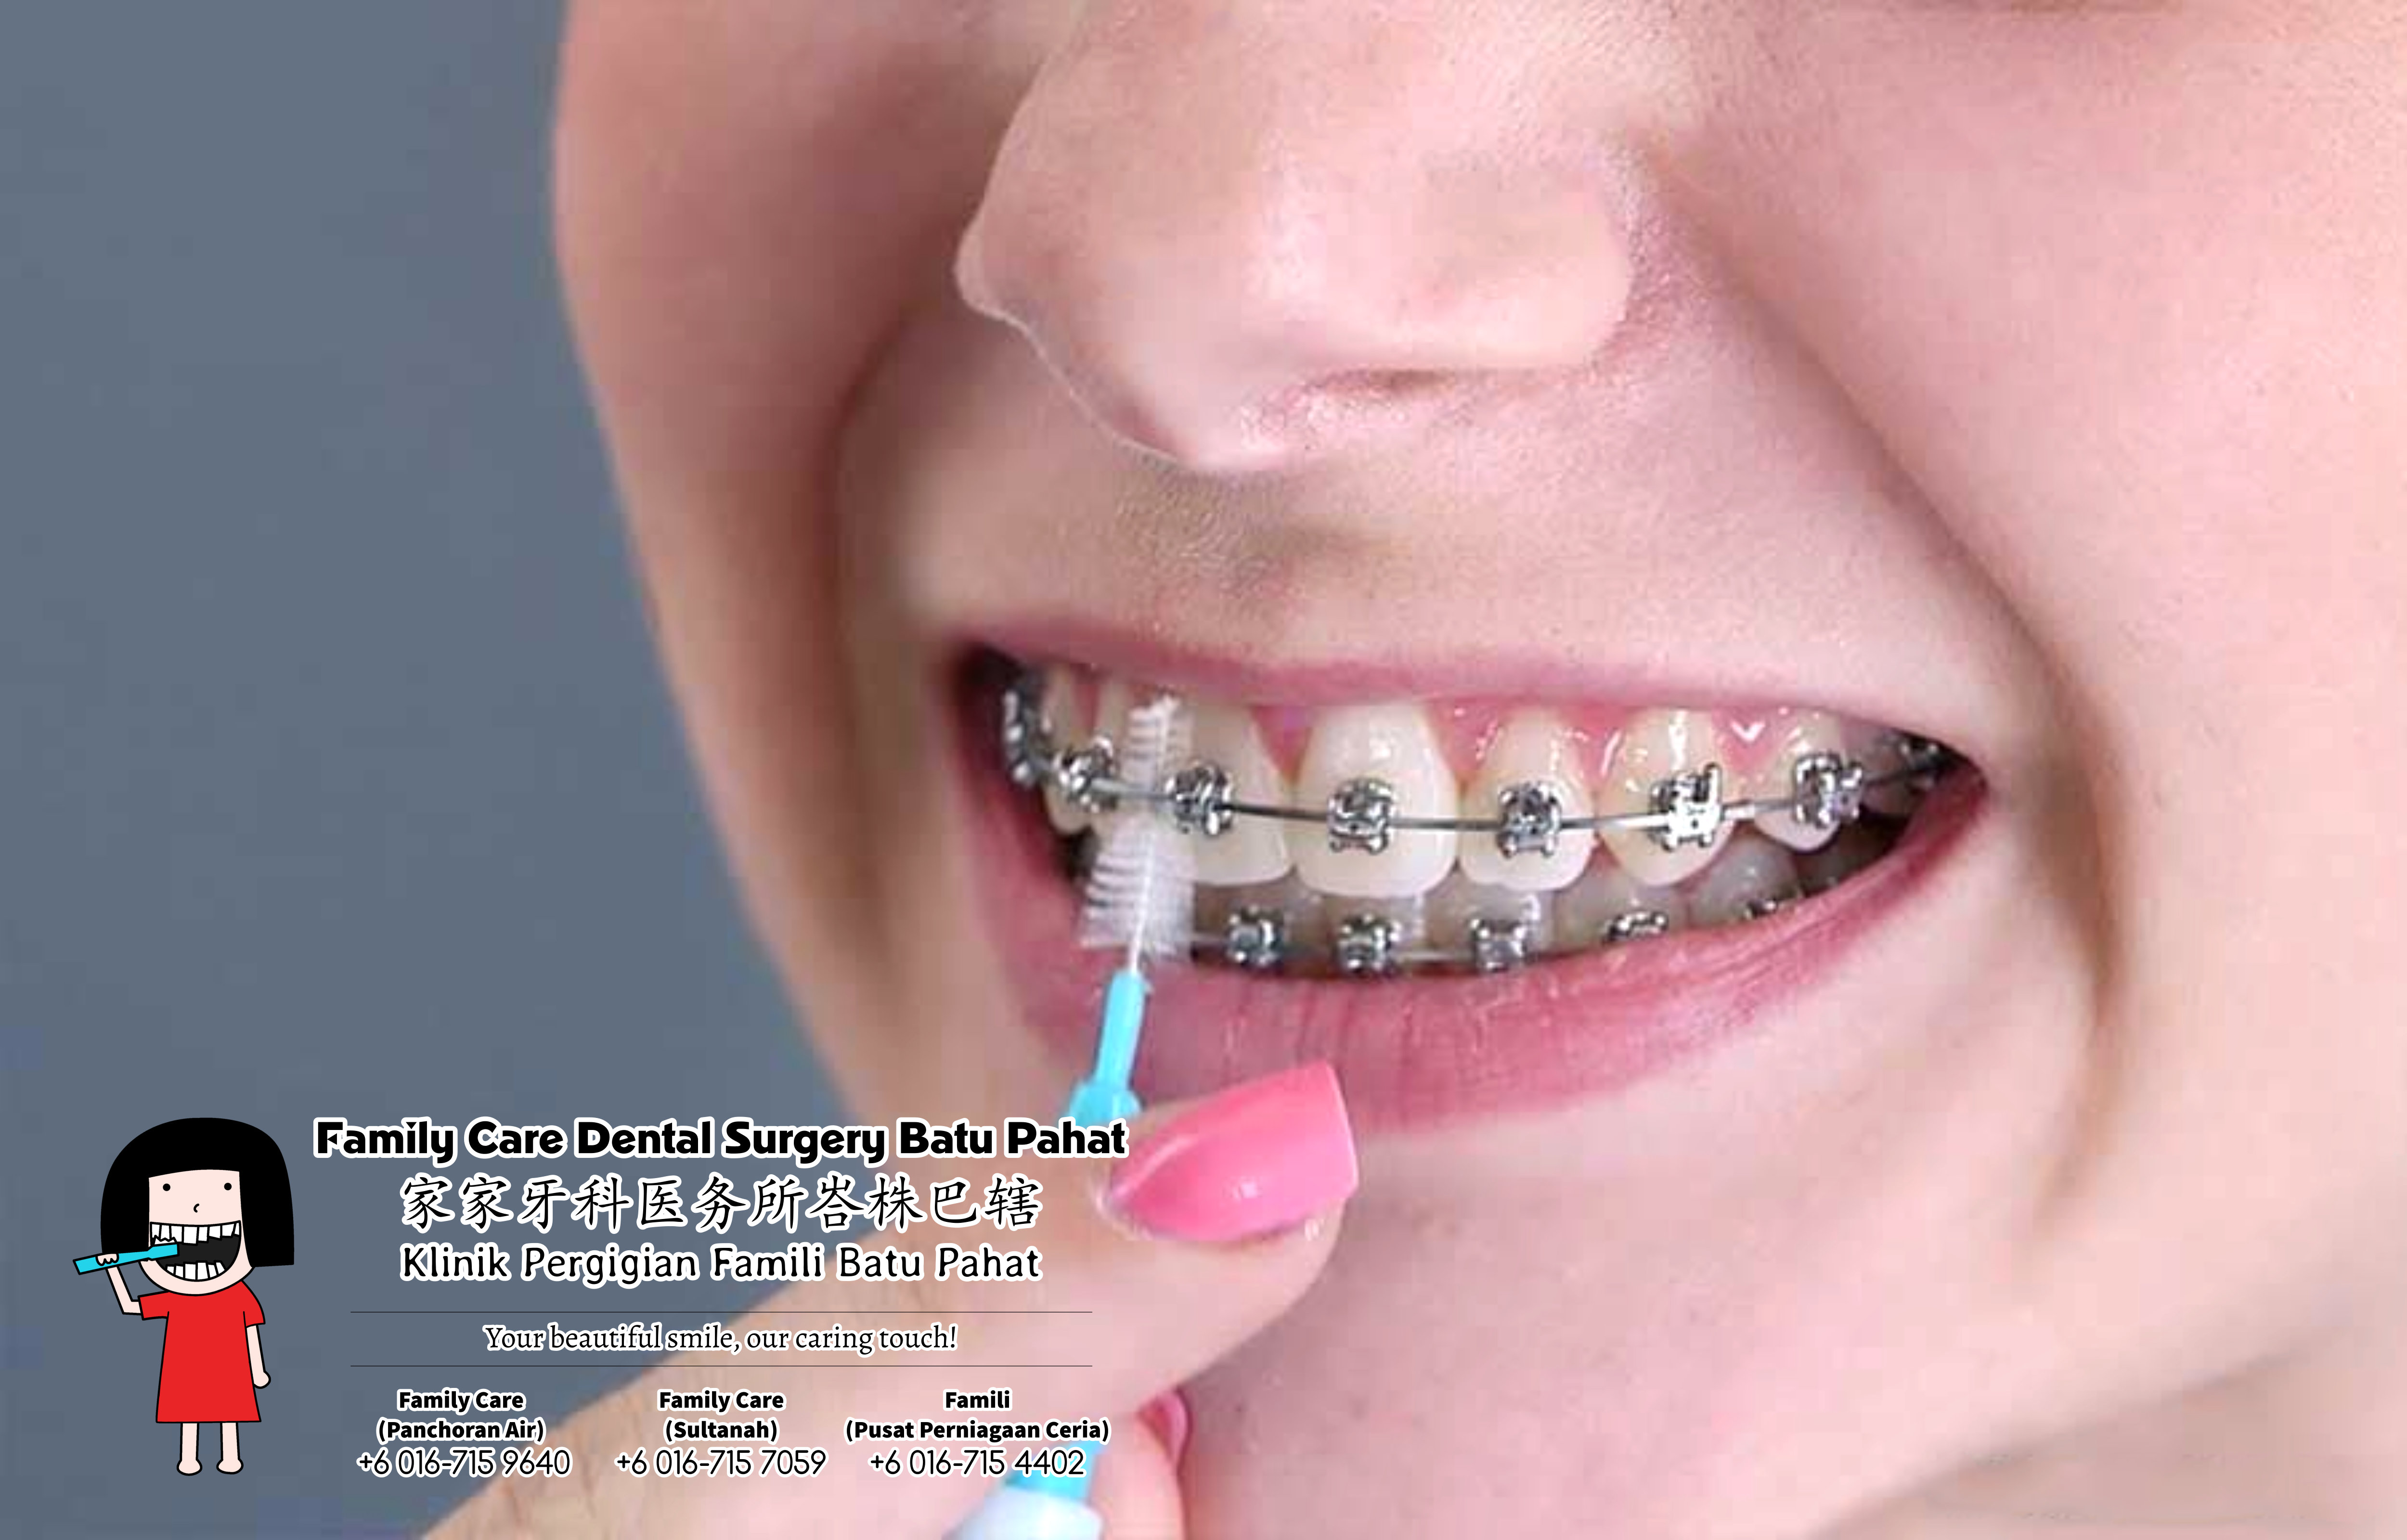 Брекеты на зубы для детей сколько стоят